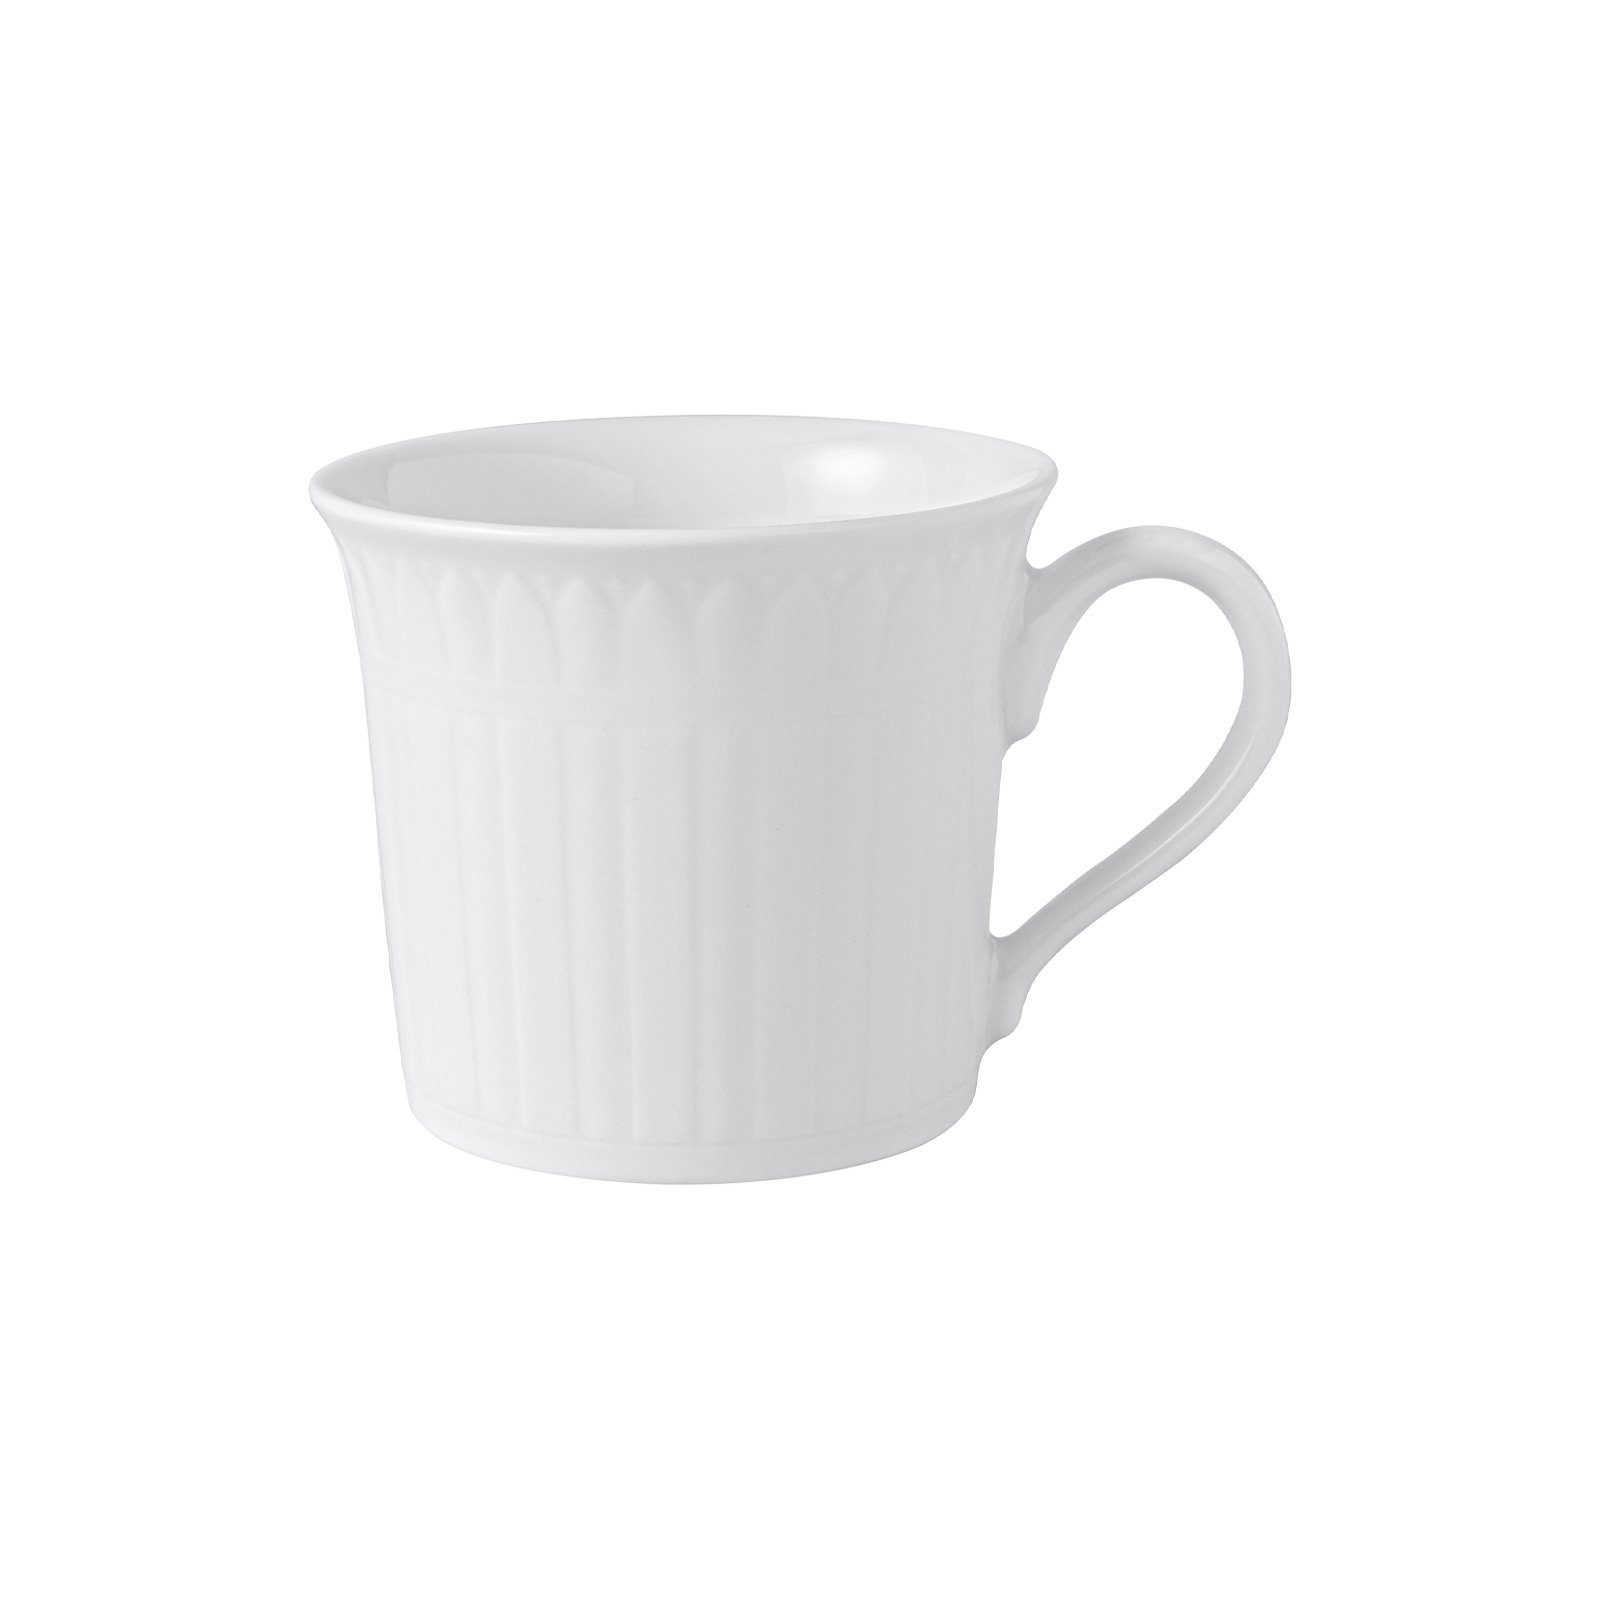 Villeroy & Boch Tasse Cellini Kaffee- / Teetasse 200 ml, Porzellan